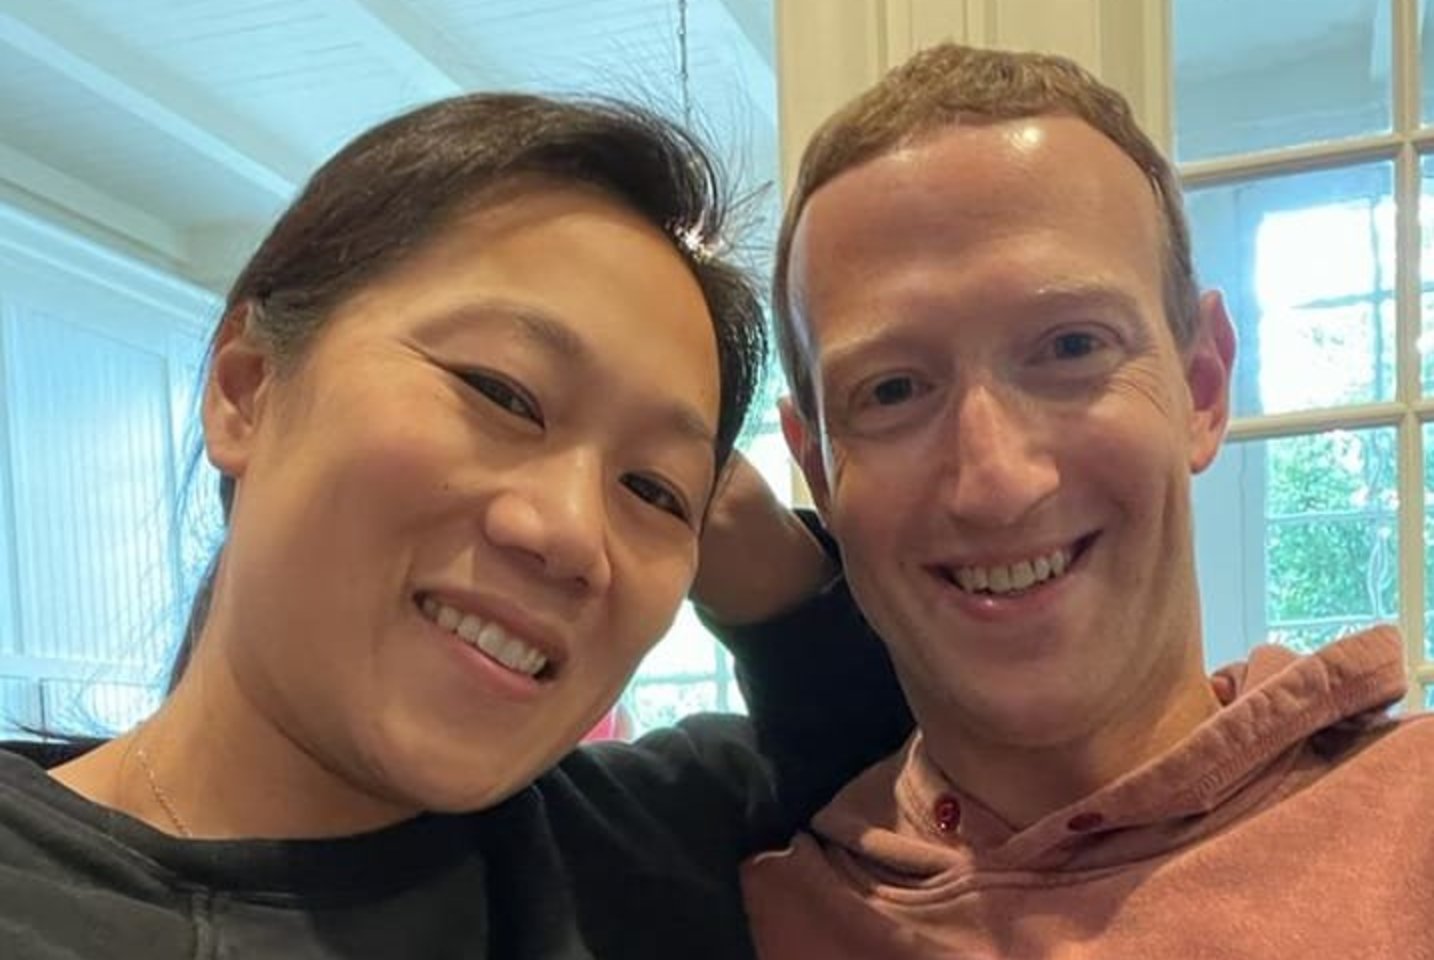  Verslininkas, „Facebook“ įkūrėjas Markas Zuckerbergas (38 m.) su žmona Priscilla Chan (37 m.) laukiasi trečios atžalos.  